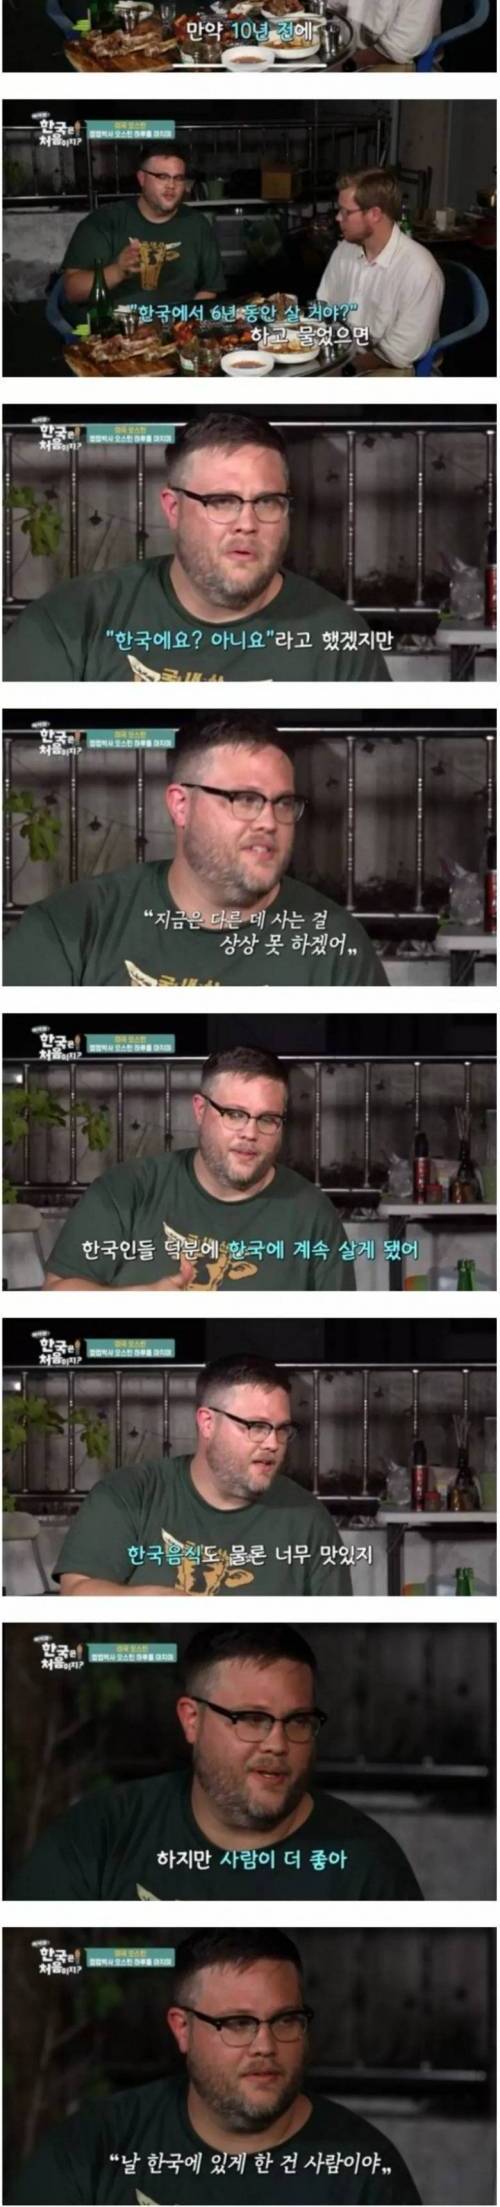 [스압] 어느 외국인이 한국을 좋아하게 된 계기